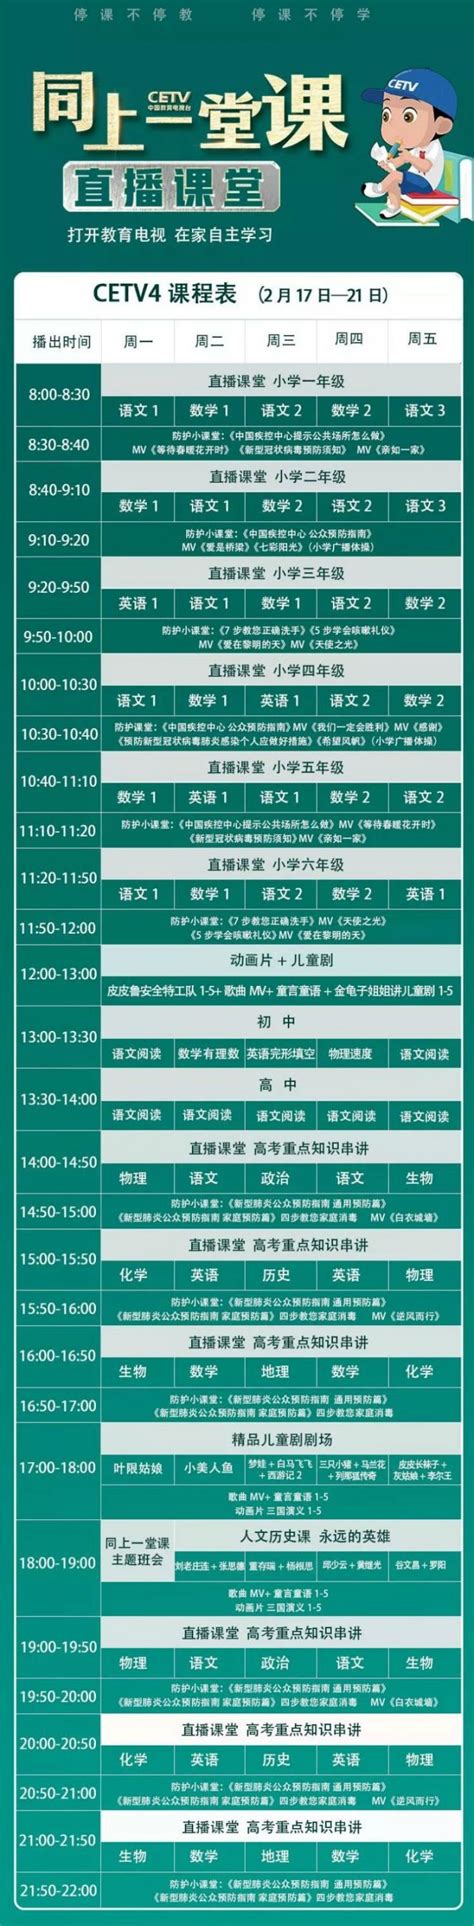 江浦社区文化活动中心影视播放厅一周放映表_上海杨浦